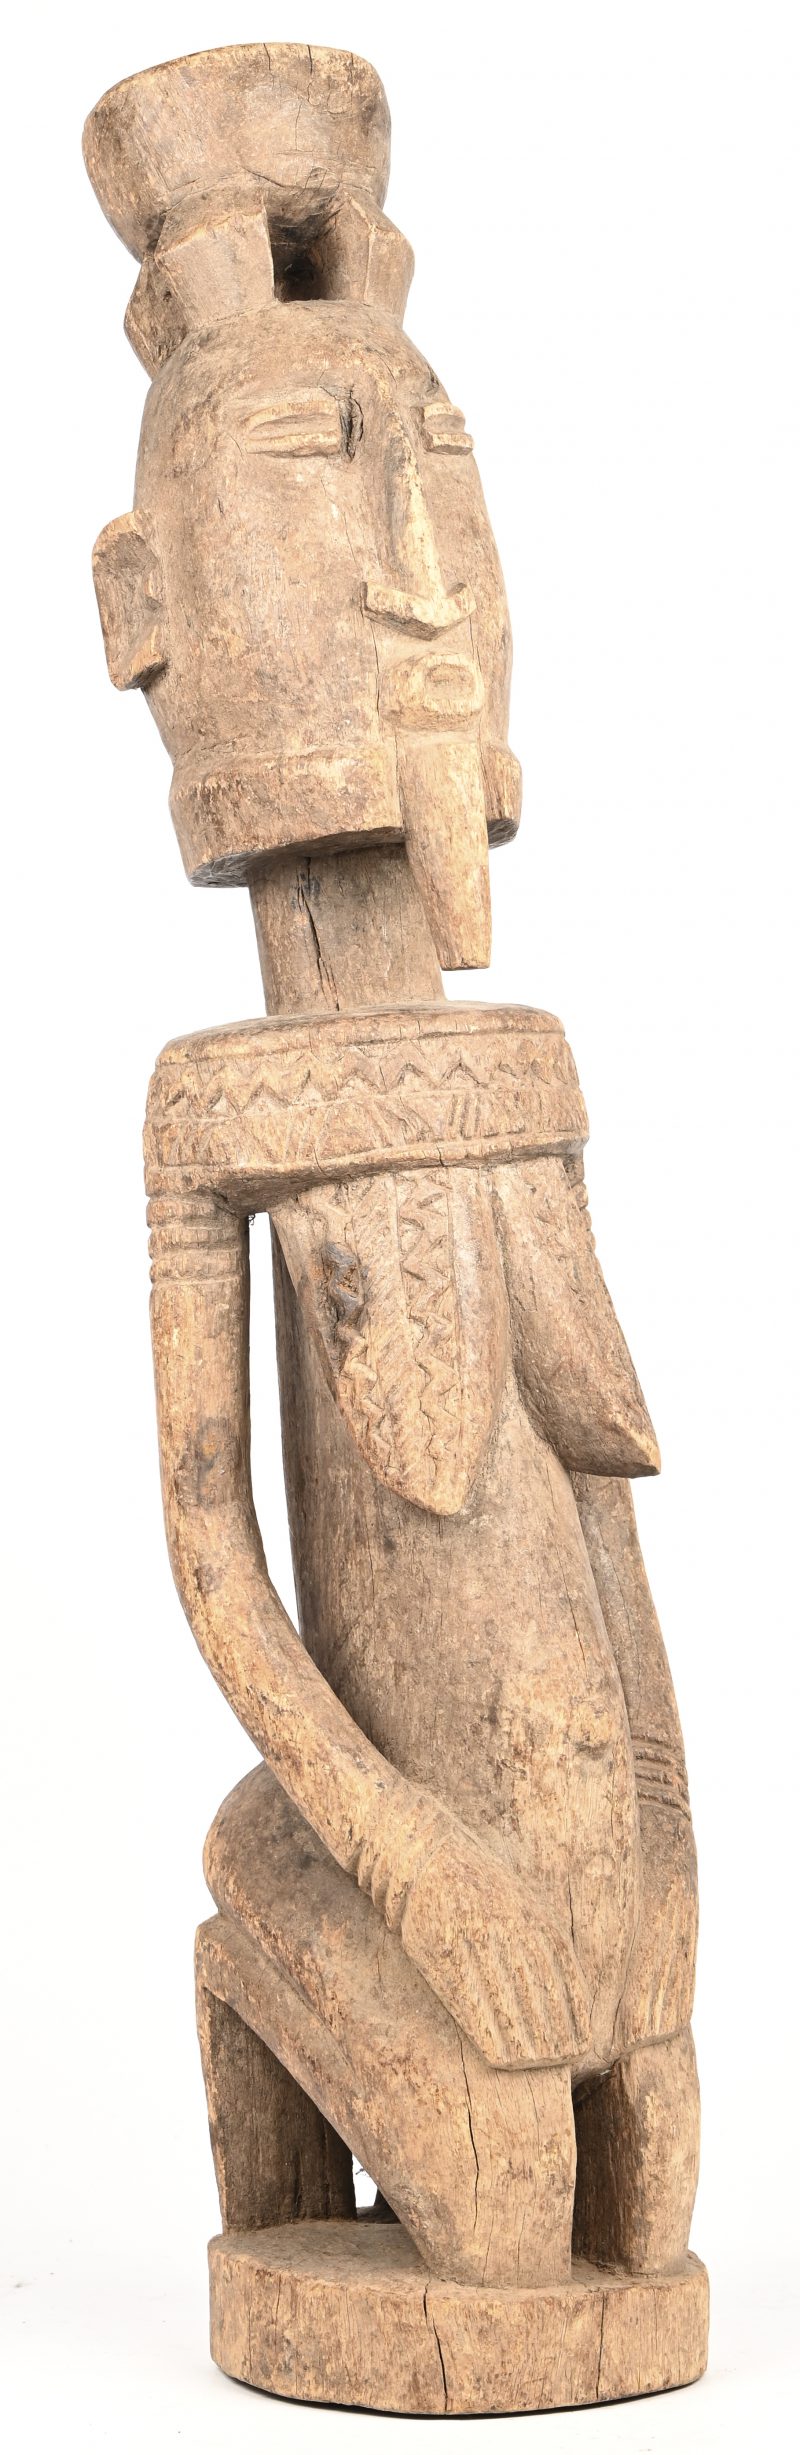 Een houten beeld van een knilende vrouw. West-Afrikaans werk.